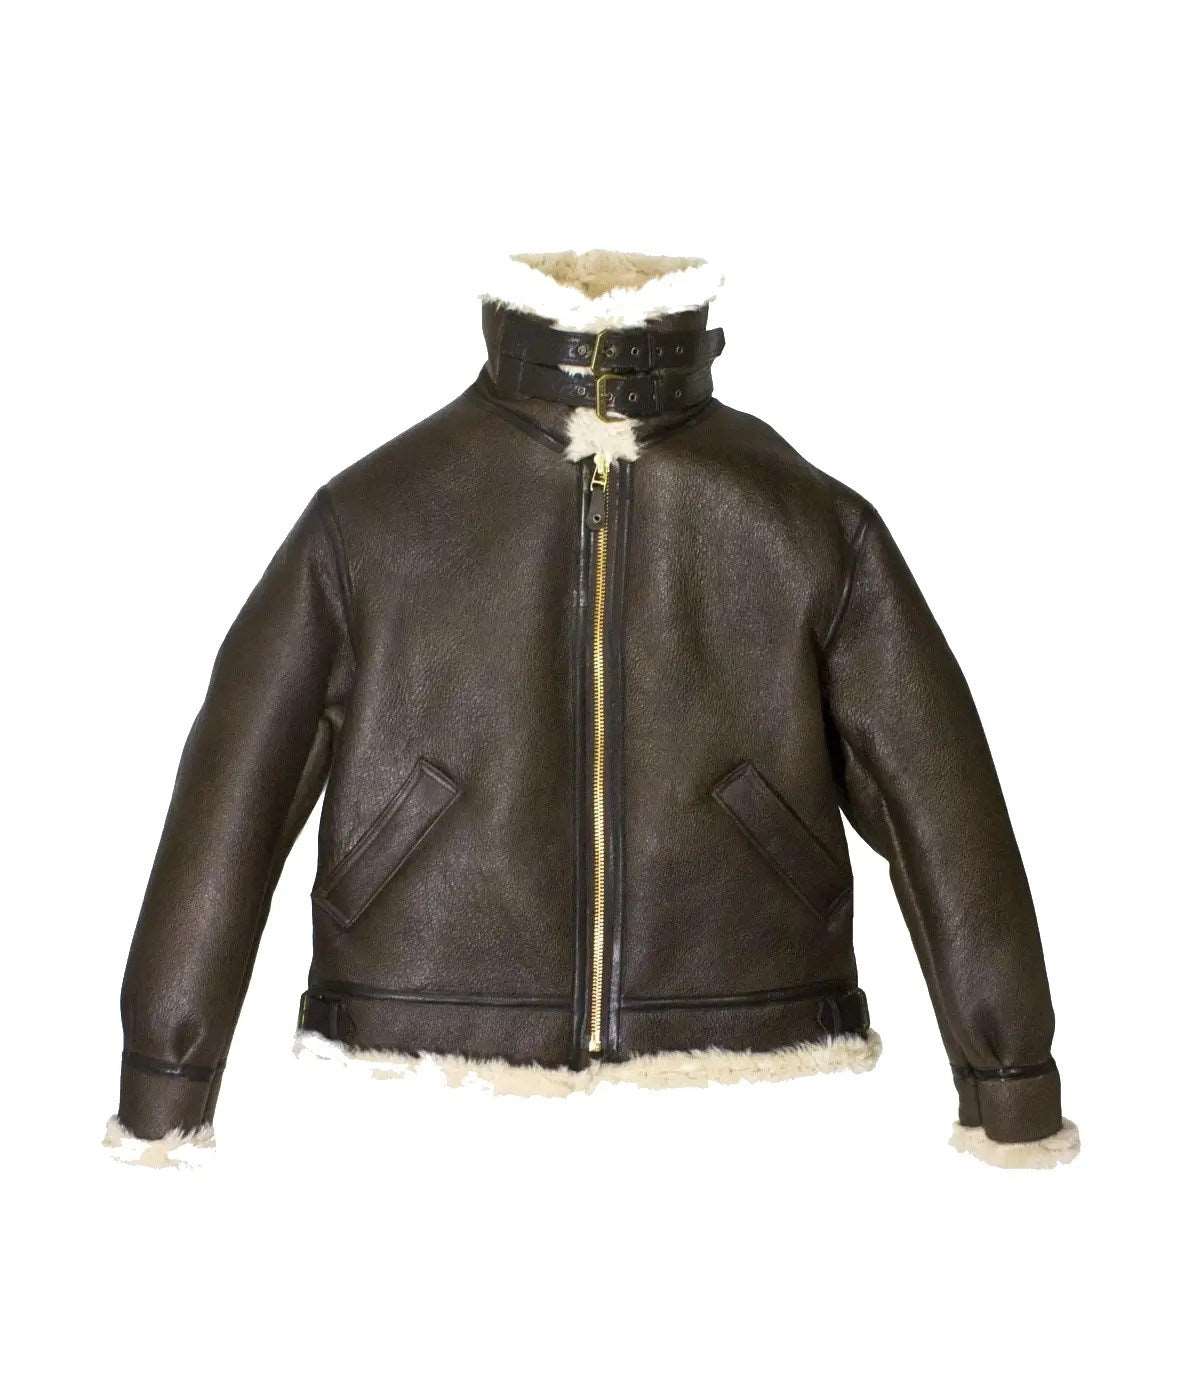 Mens Aviator Style Shearling Leather Jacket - Bomber Jacket